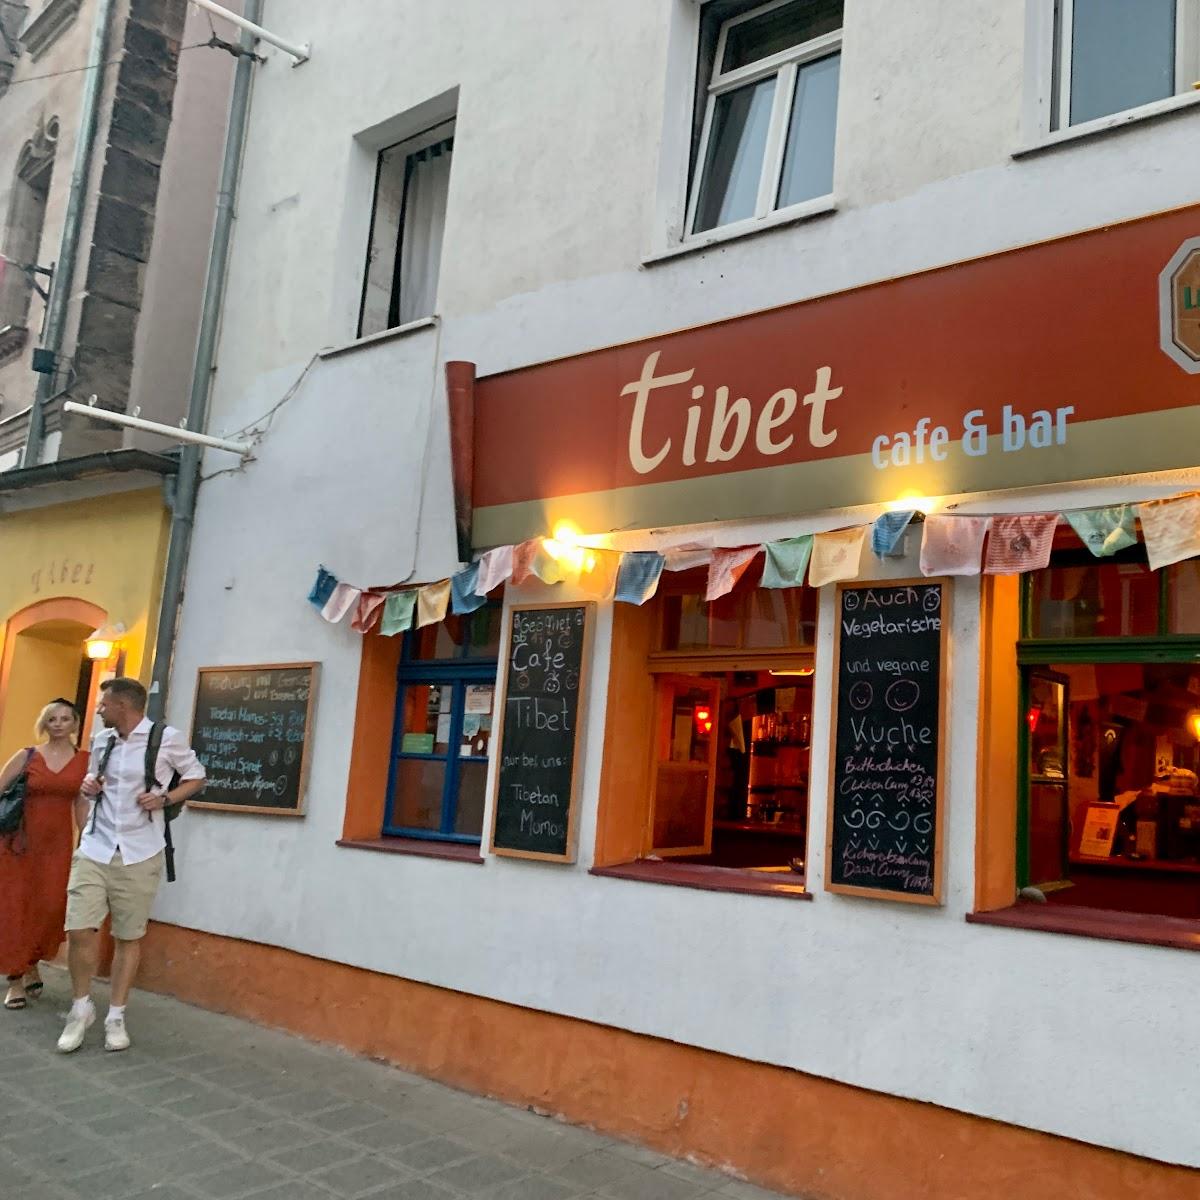 Restaurant "Tibet" in Nürnberg